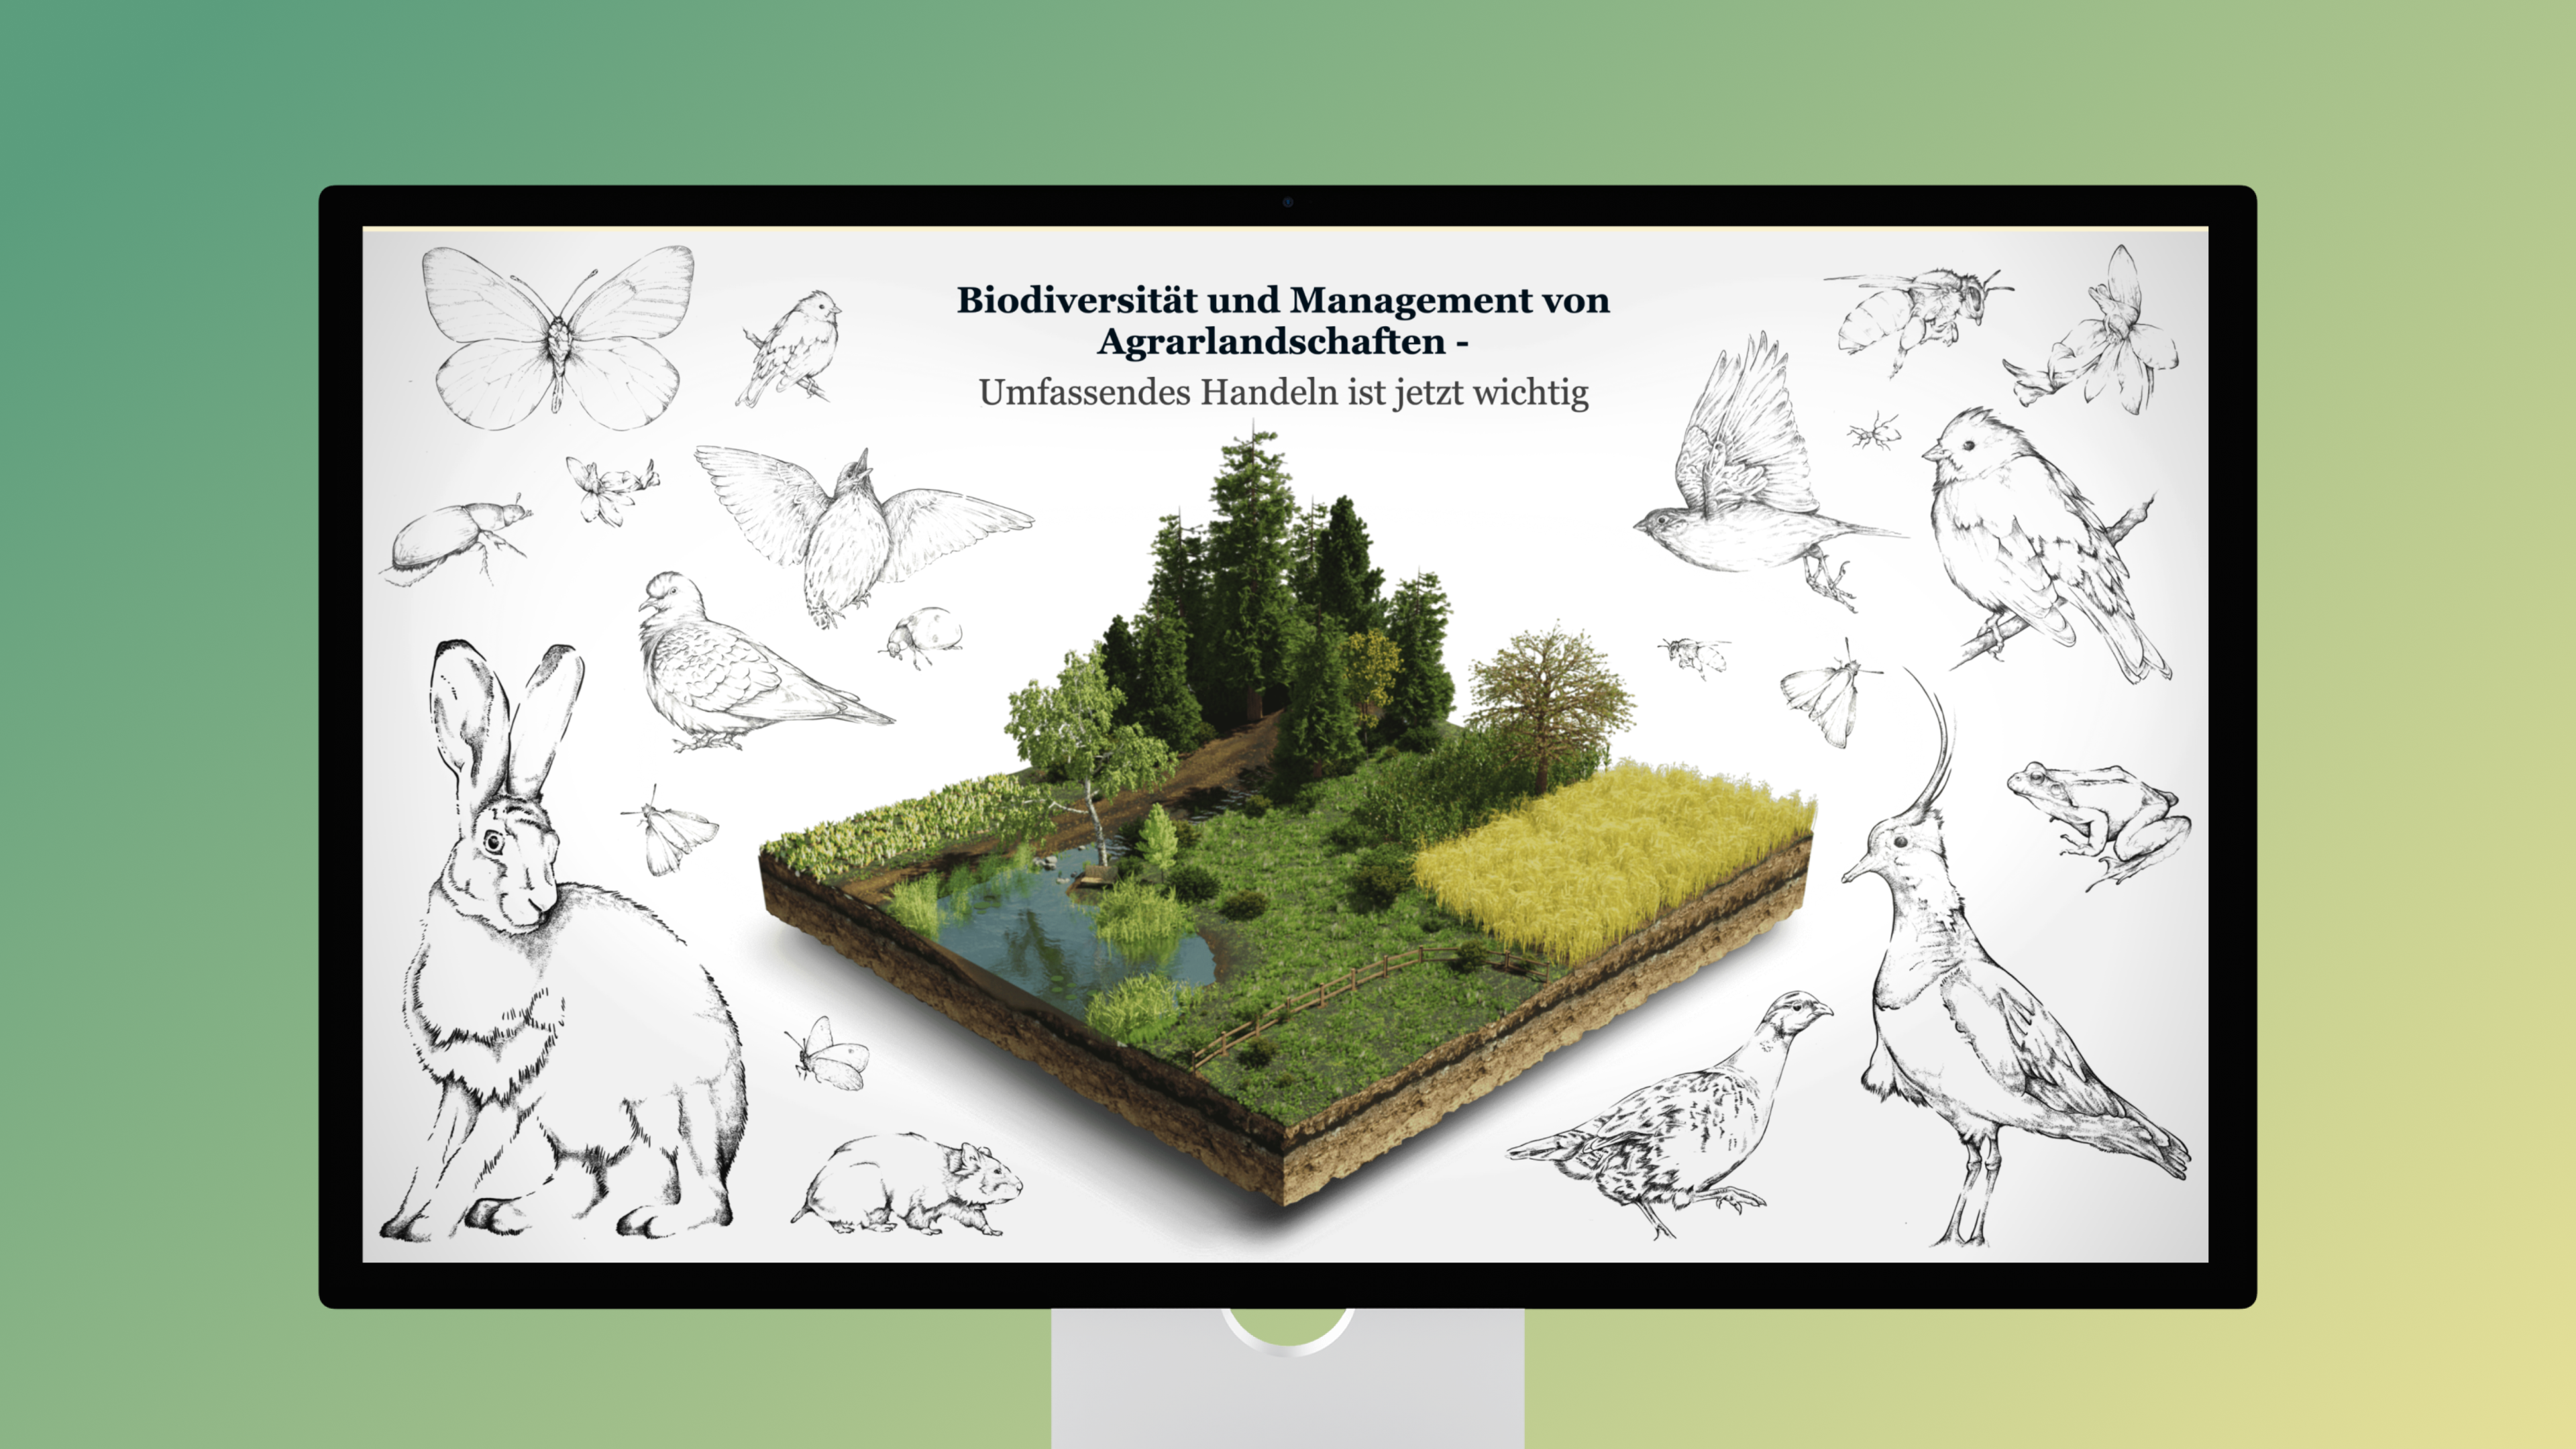 Der Heldenbereich der Website "Biodiversität und landwirtschaftliche Bewirtschaftung" zeigt eine 3D-Darstellung einer Agrarlandschaft. Dieses Modell ist von Skizzen verschiedener Tiere umgeben, darunter Schmetterlinge, Vögel und Kaninchen, die die reiche Artenvielfalt in solchen Umgebungen symbolisieren.